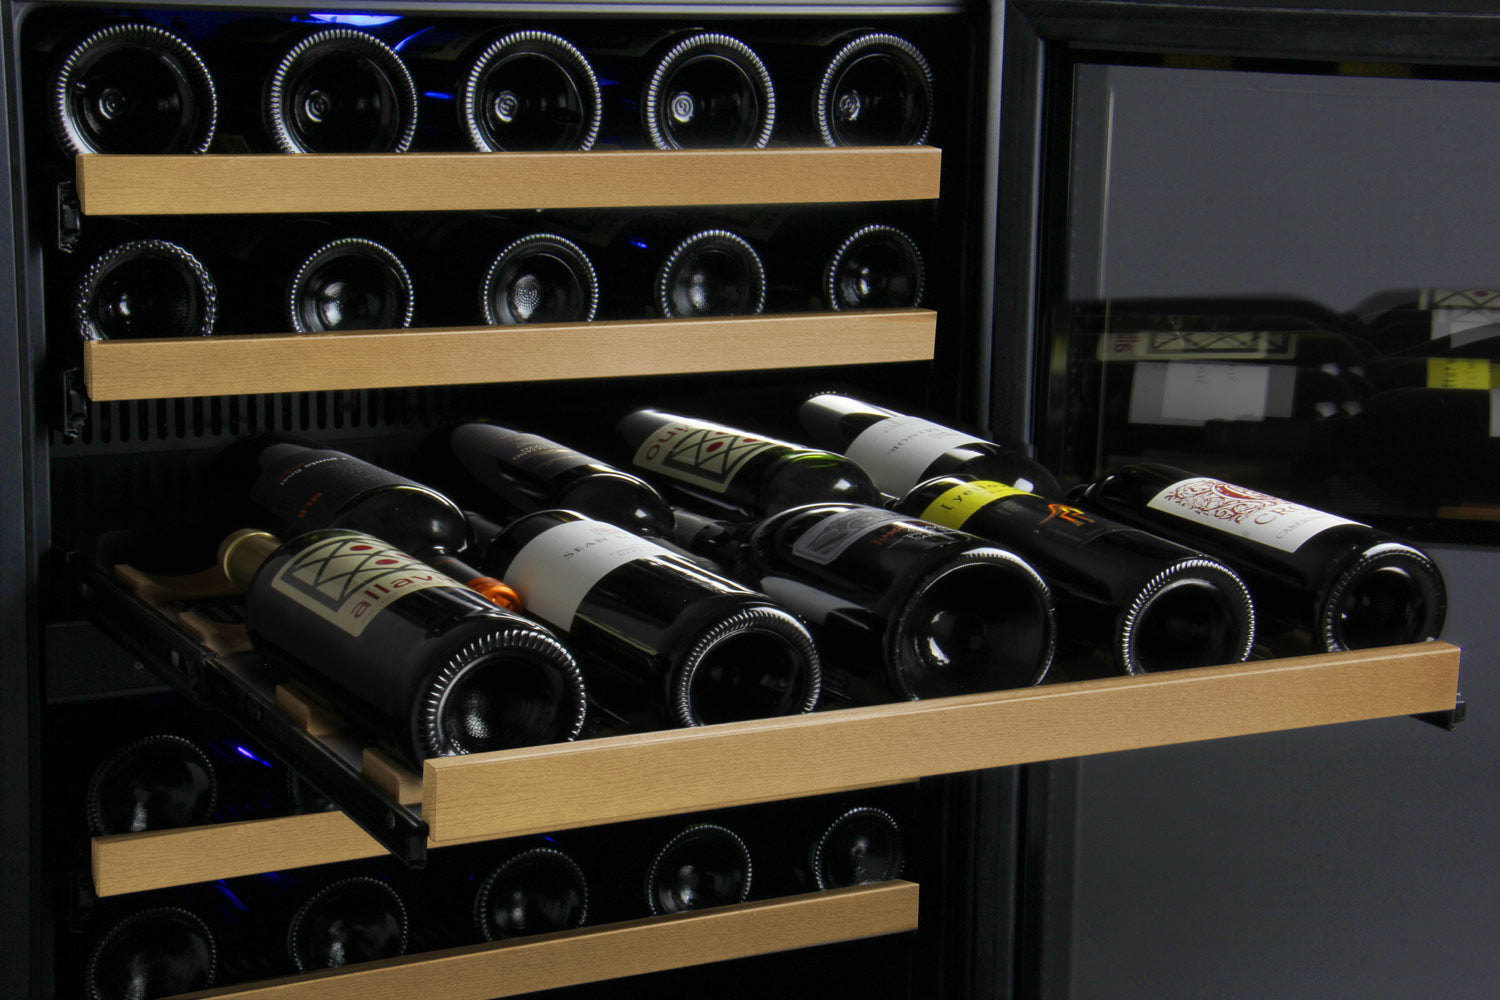 Allavino 24" Wide FlexCount II Tru-Vino 56 Bottle Single Zone Black Right Hinge Wine Refrigerator